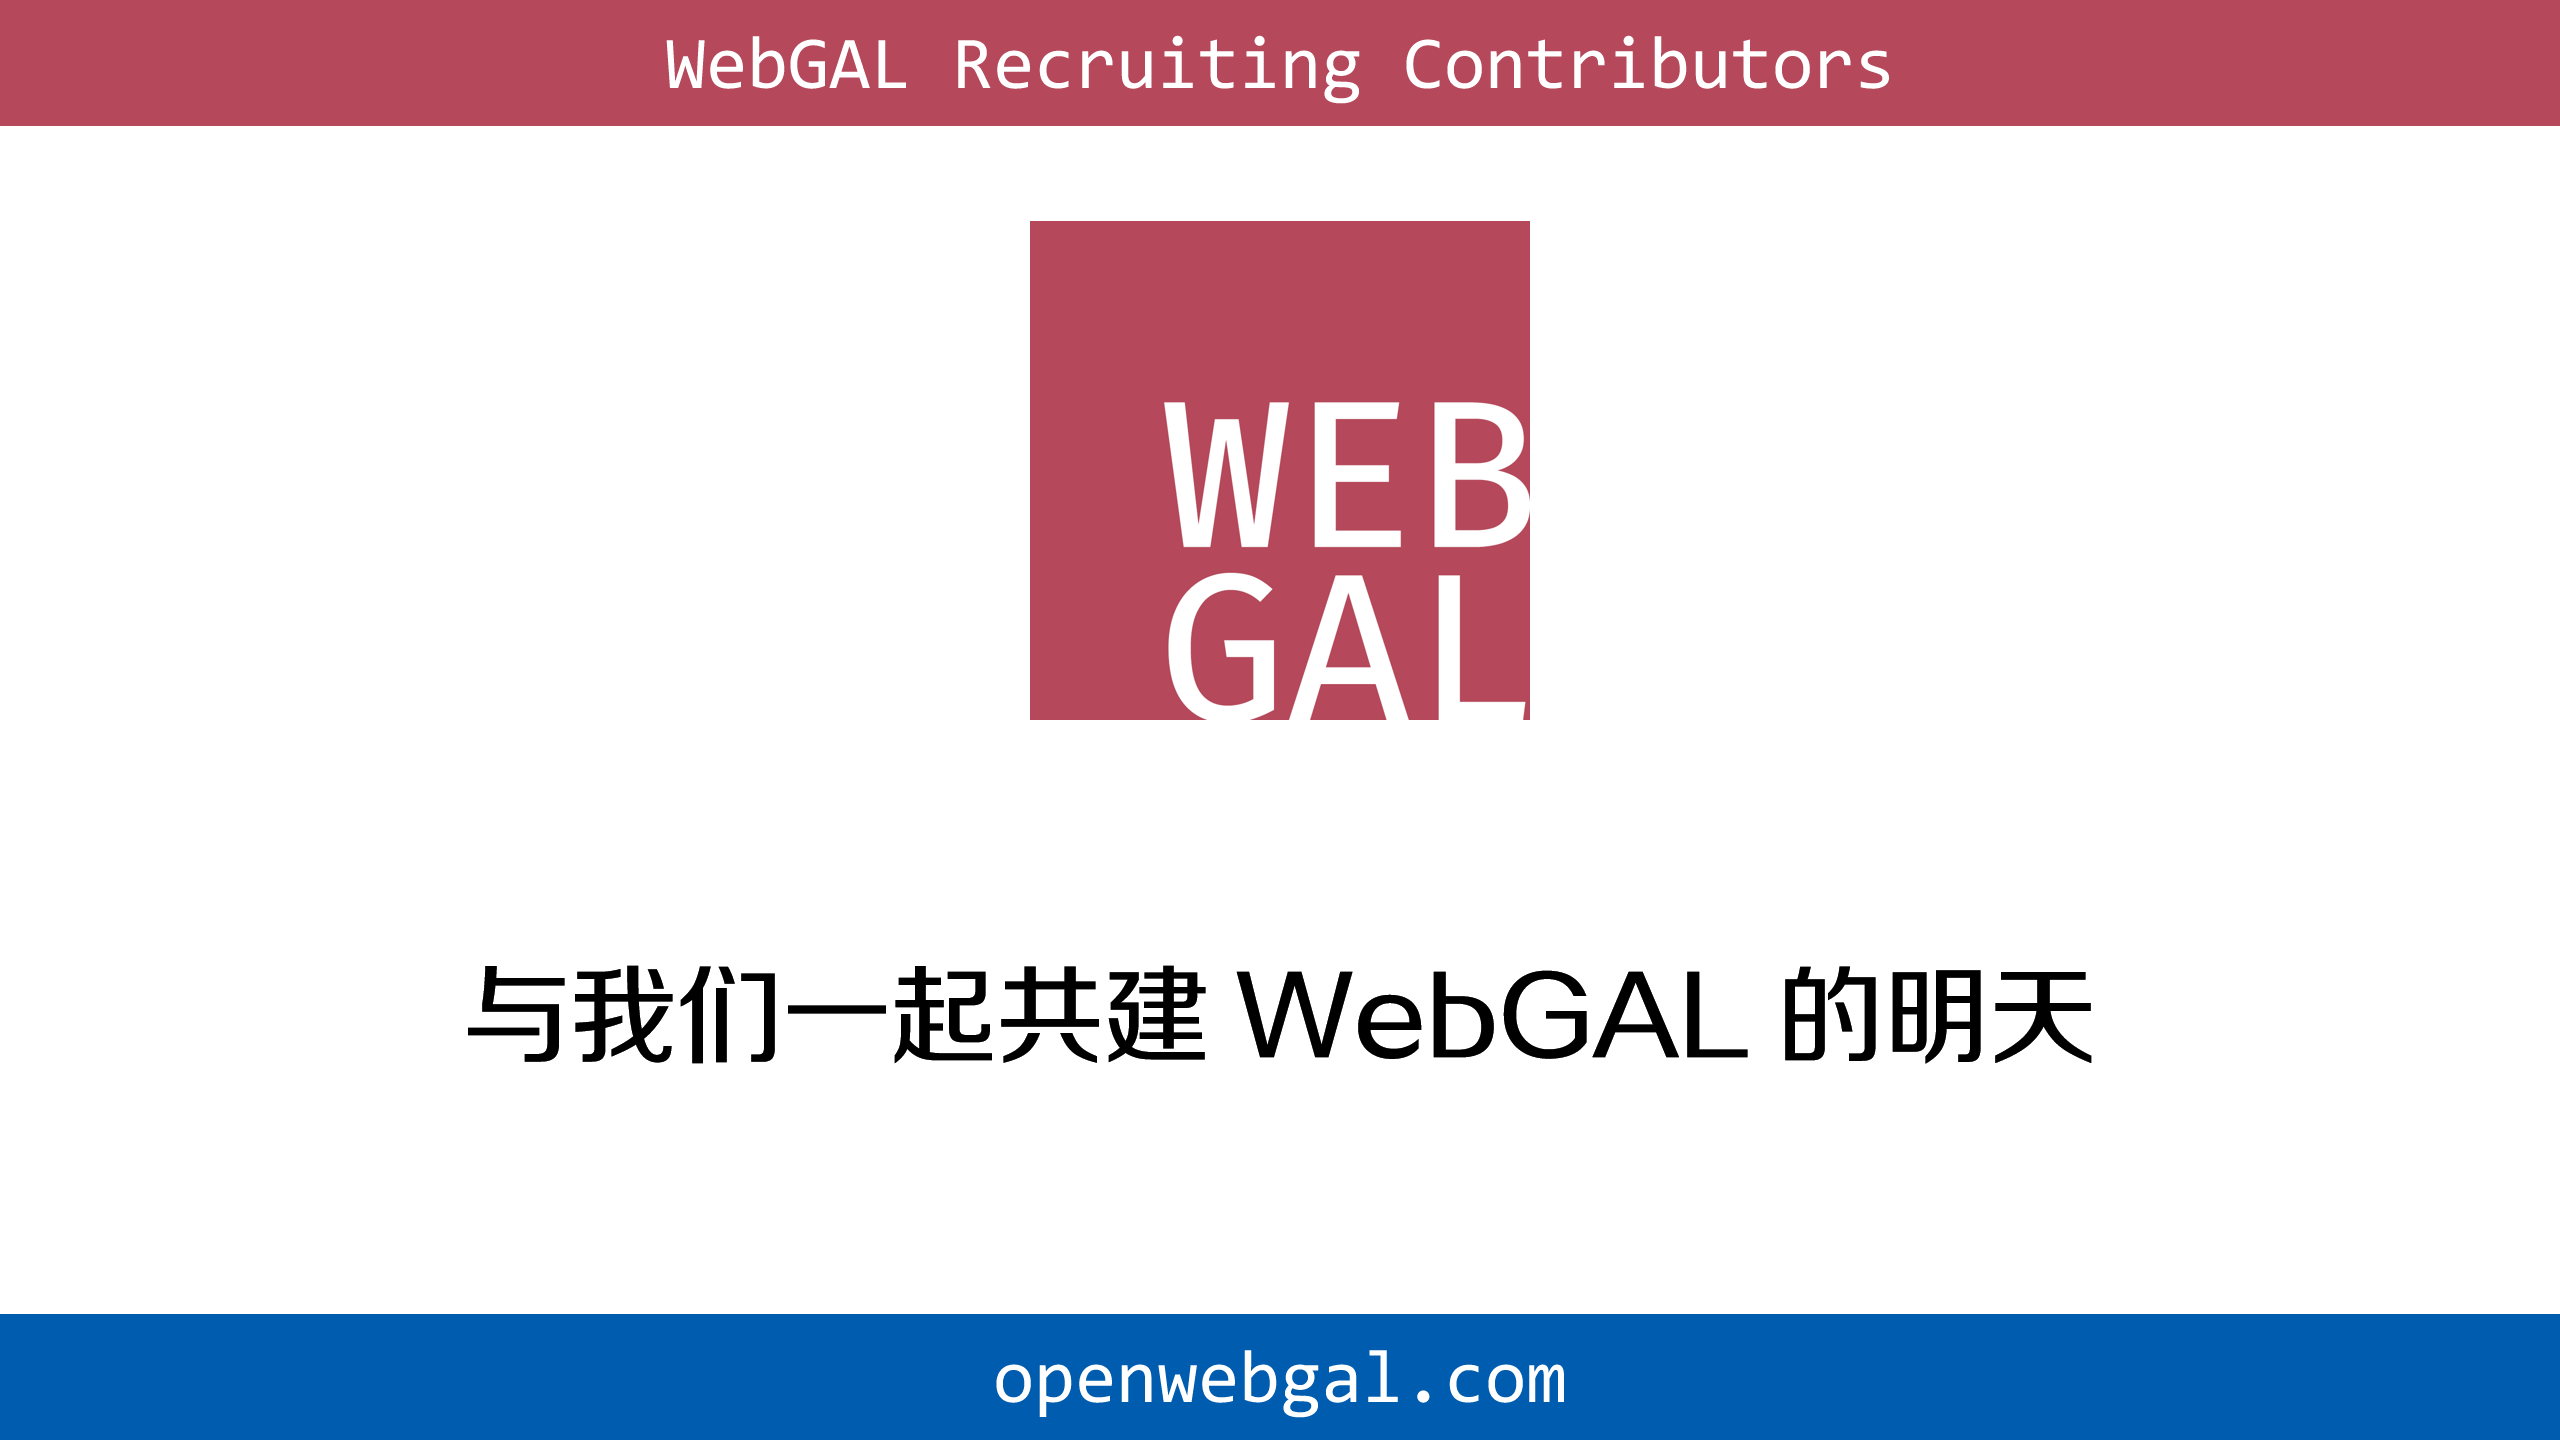 与我们一起共建 WebGAL 的明天